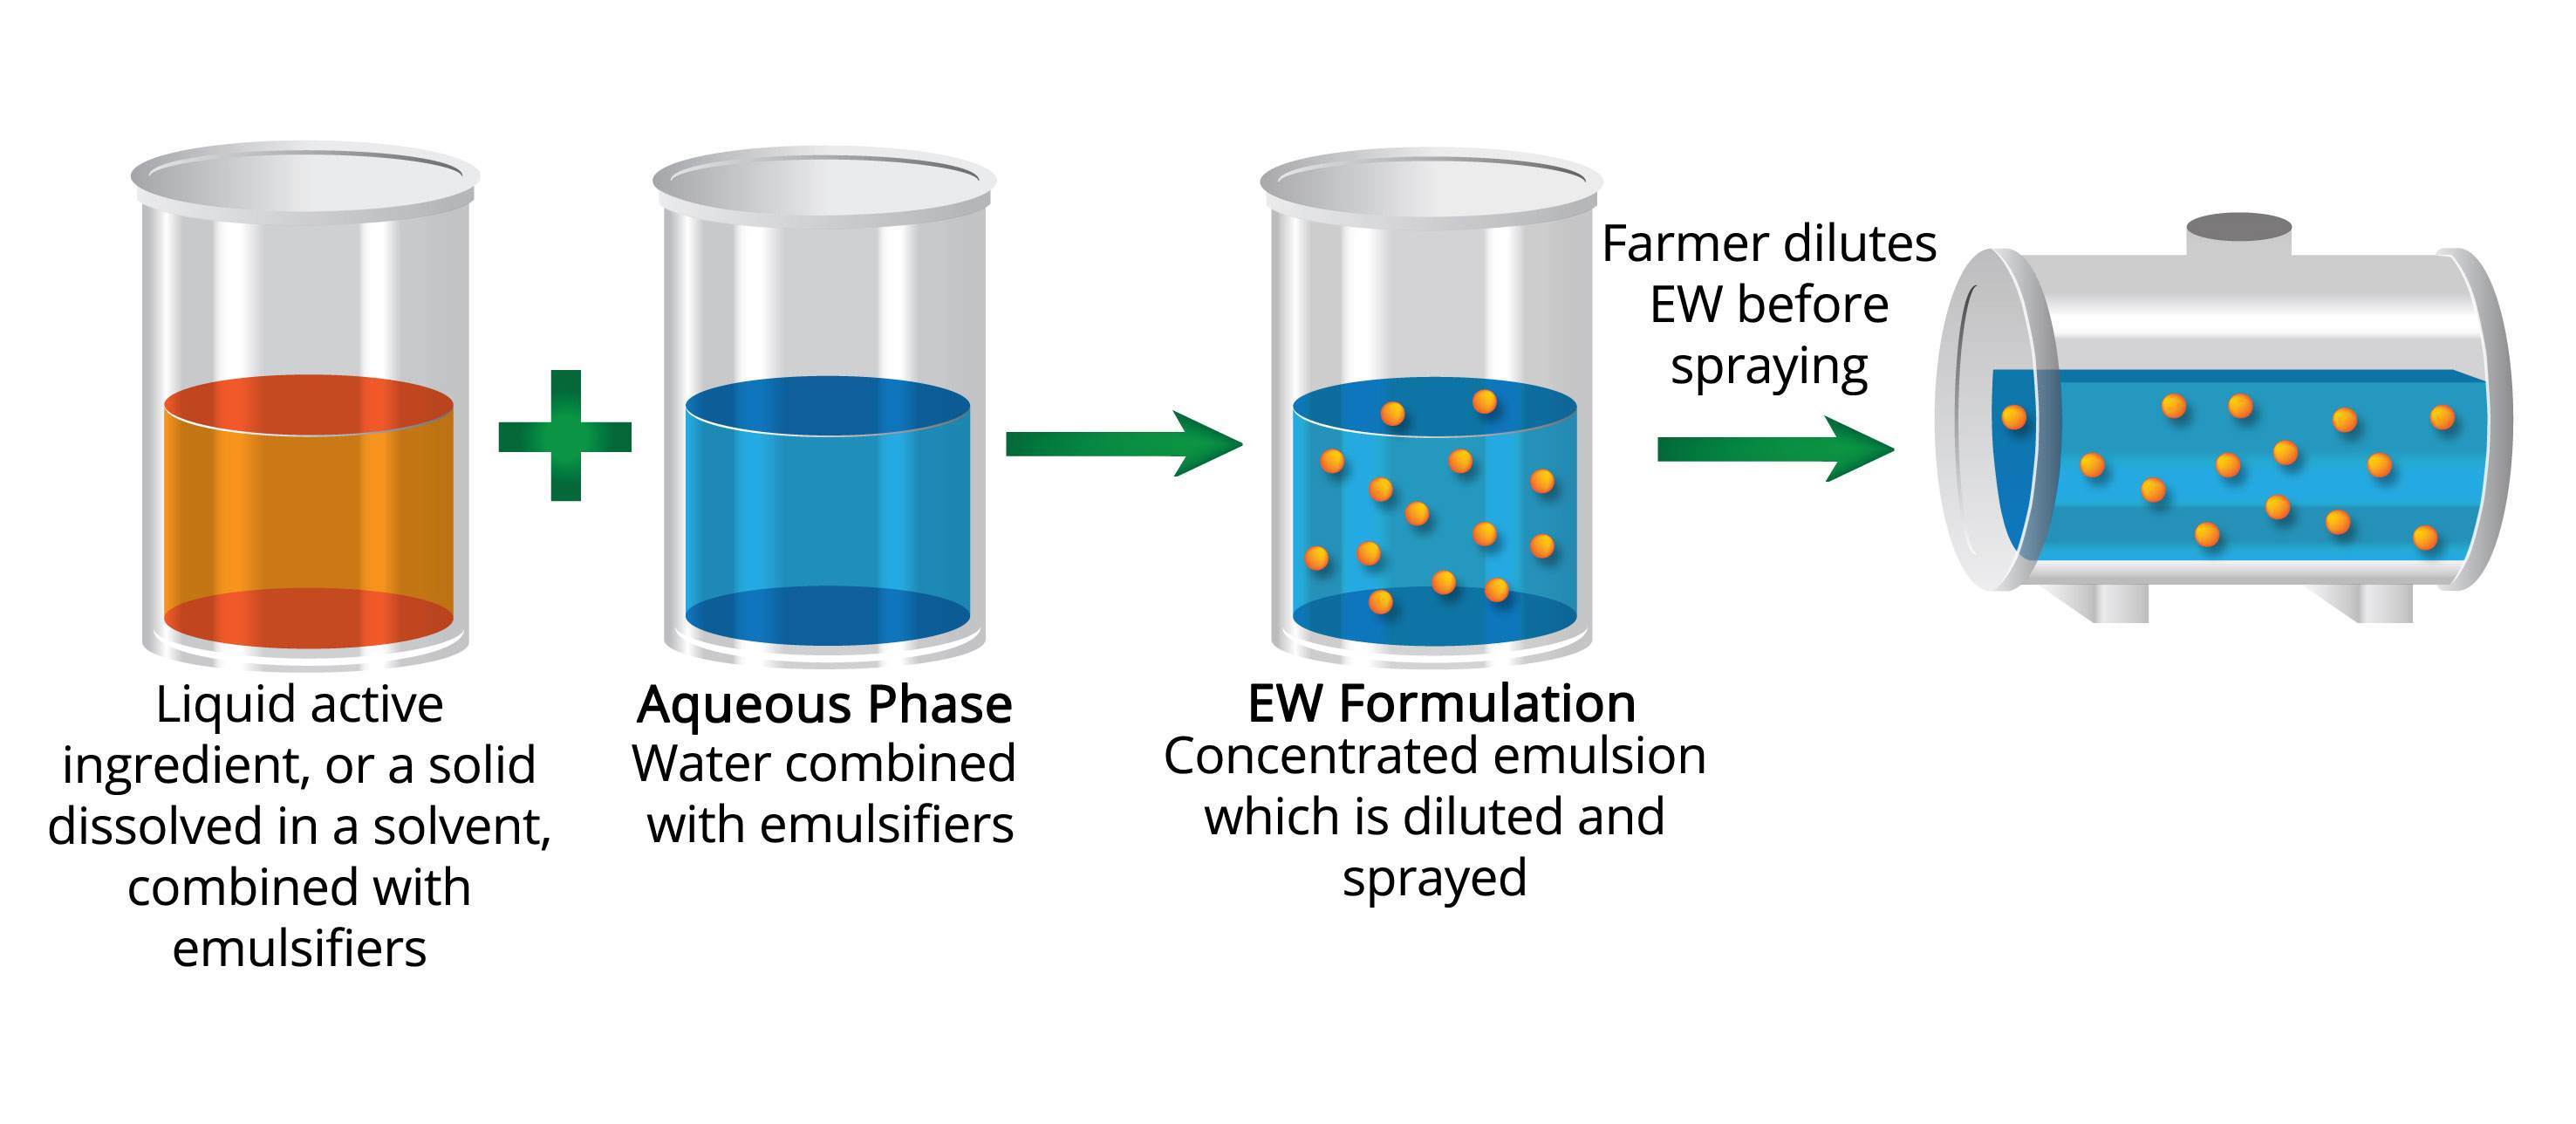 Diagrama de la formulación EW